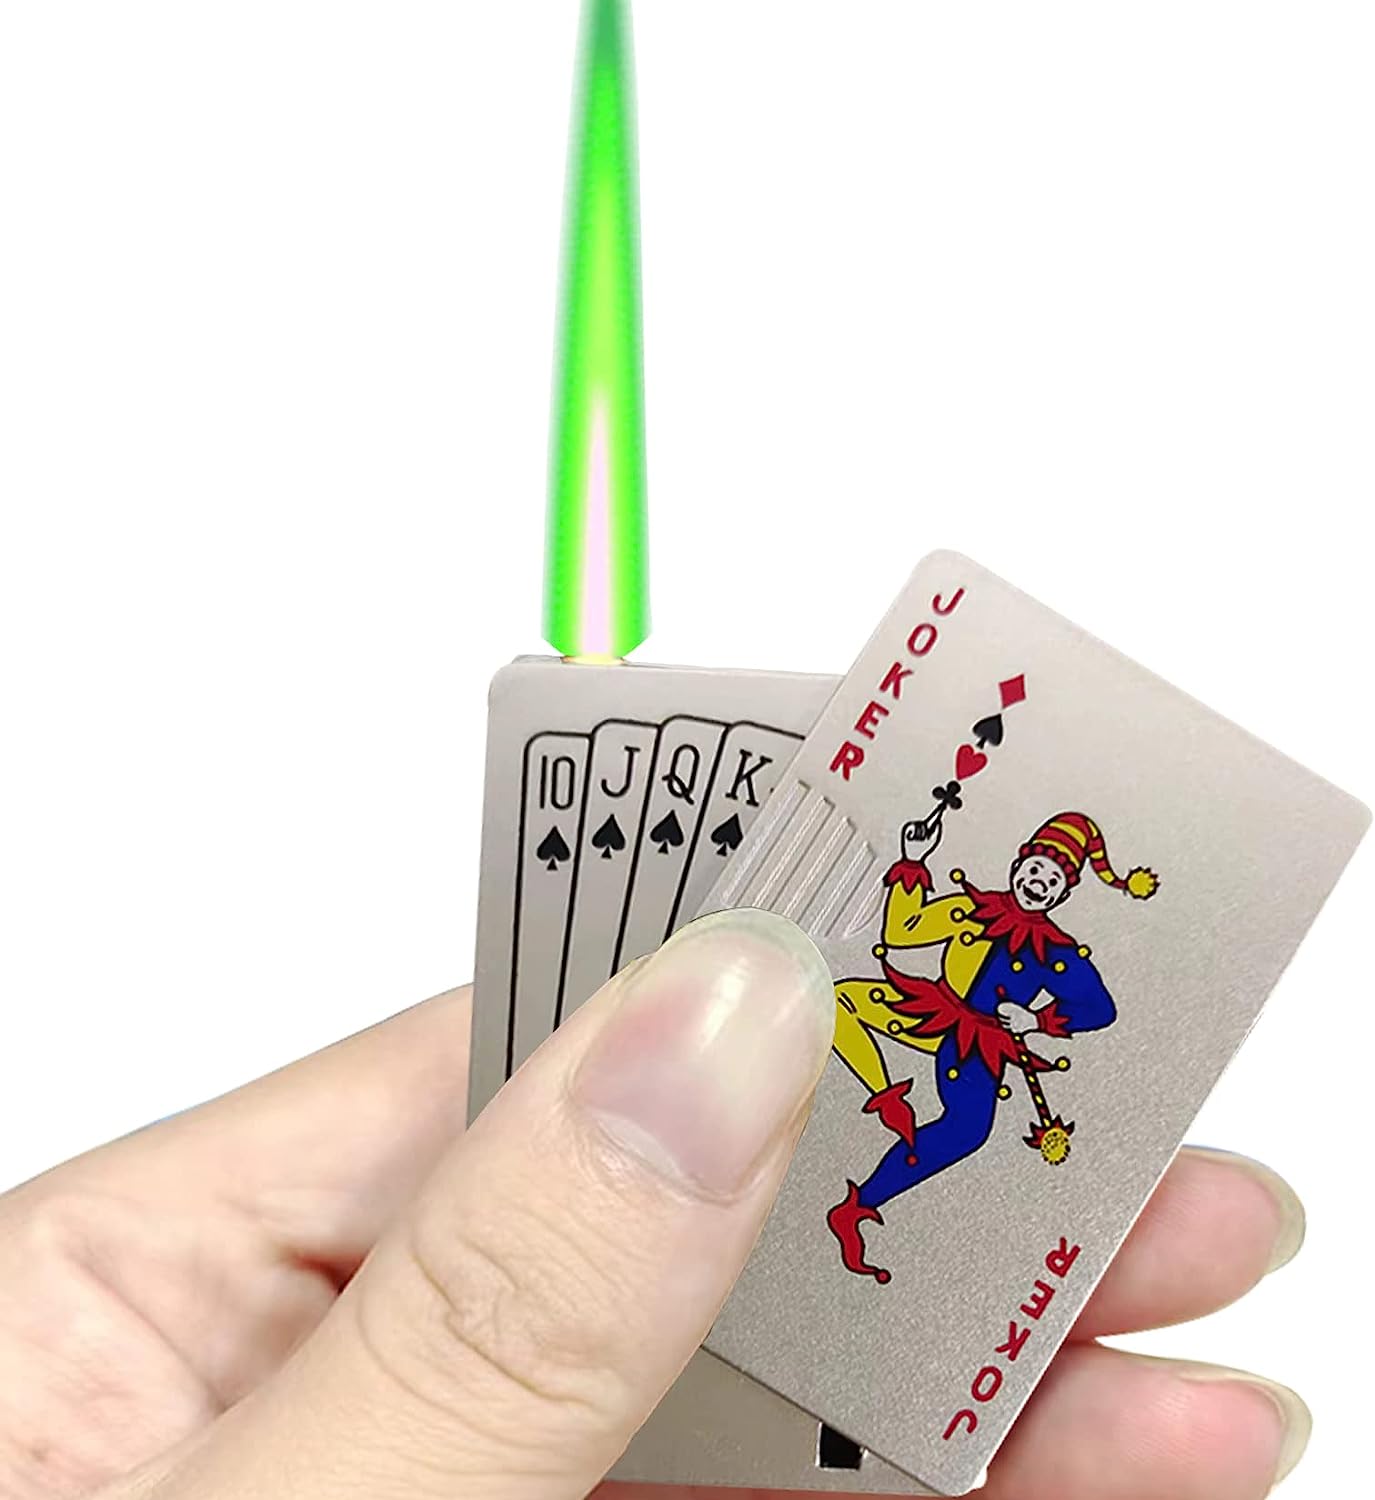 Joker Lighter